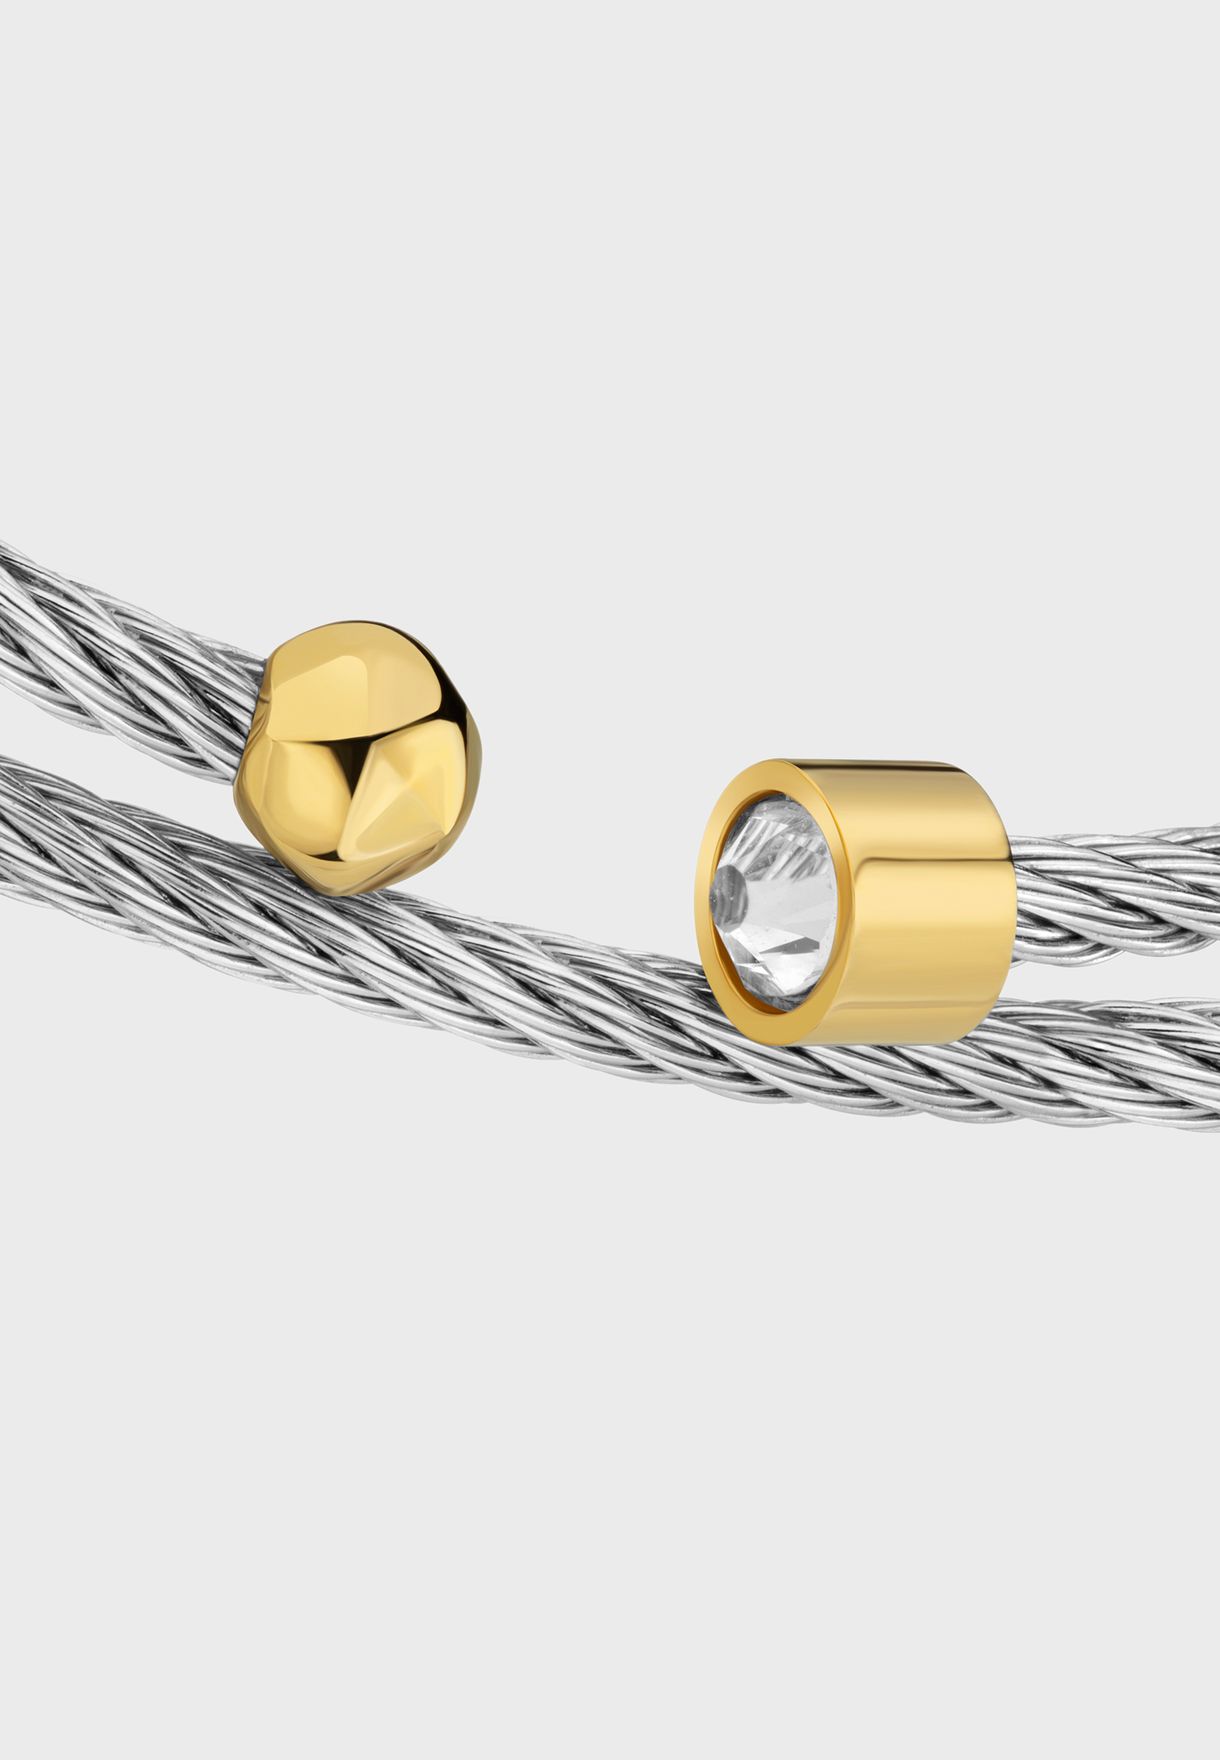 Chain Detailed Bracelet